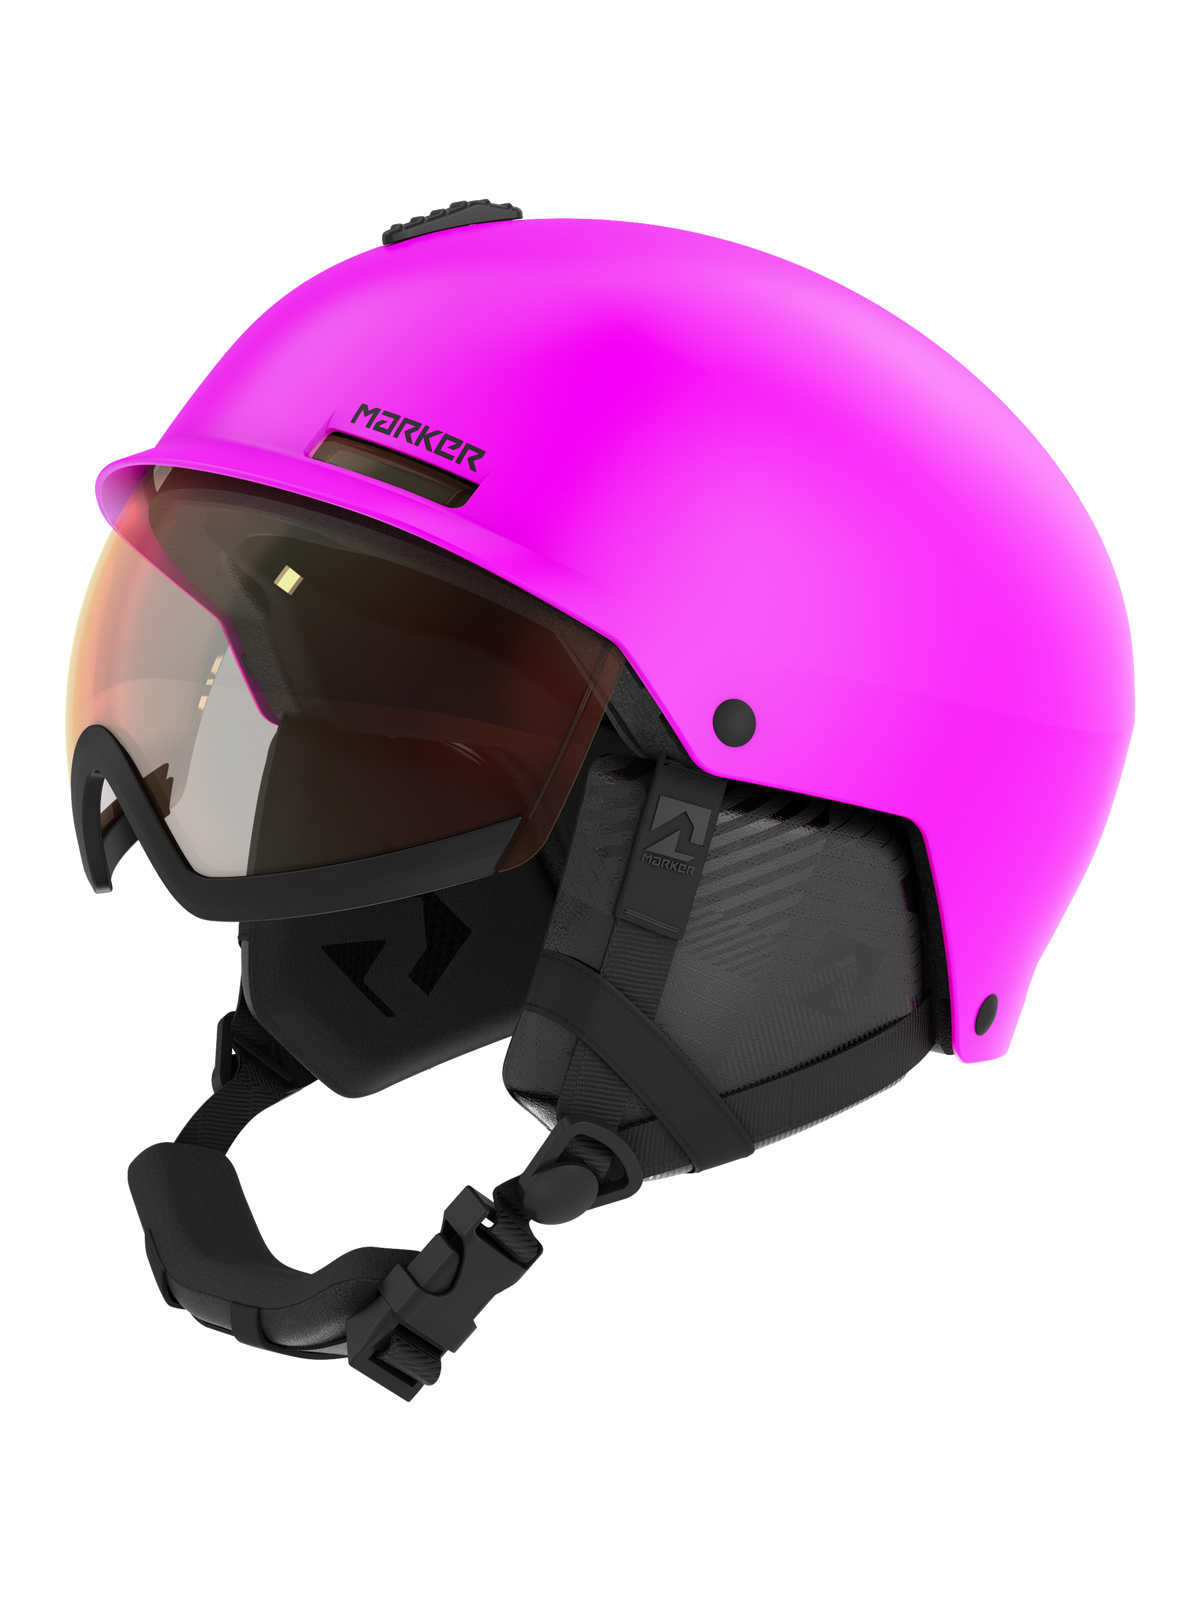 Casco Nzi Helmets junior activy graphics pink bones